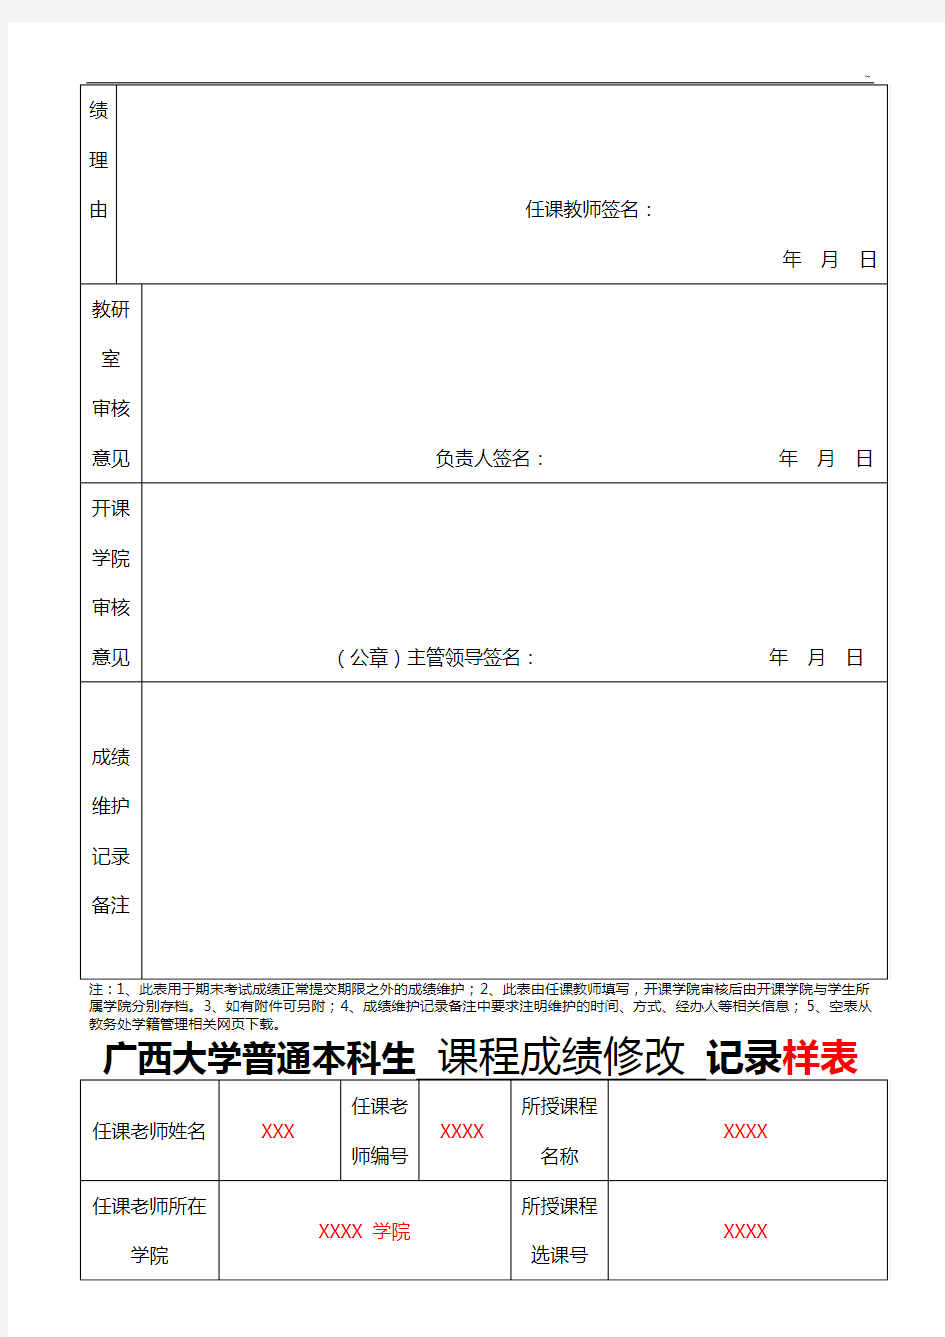 广西大学普通本科生课程成绩修改资料收集表